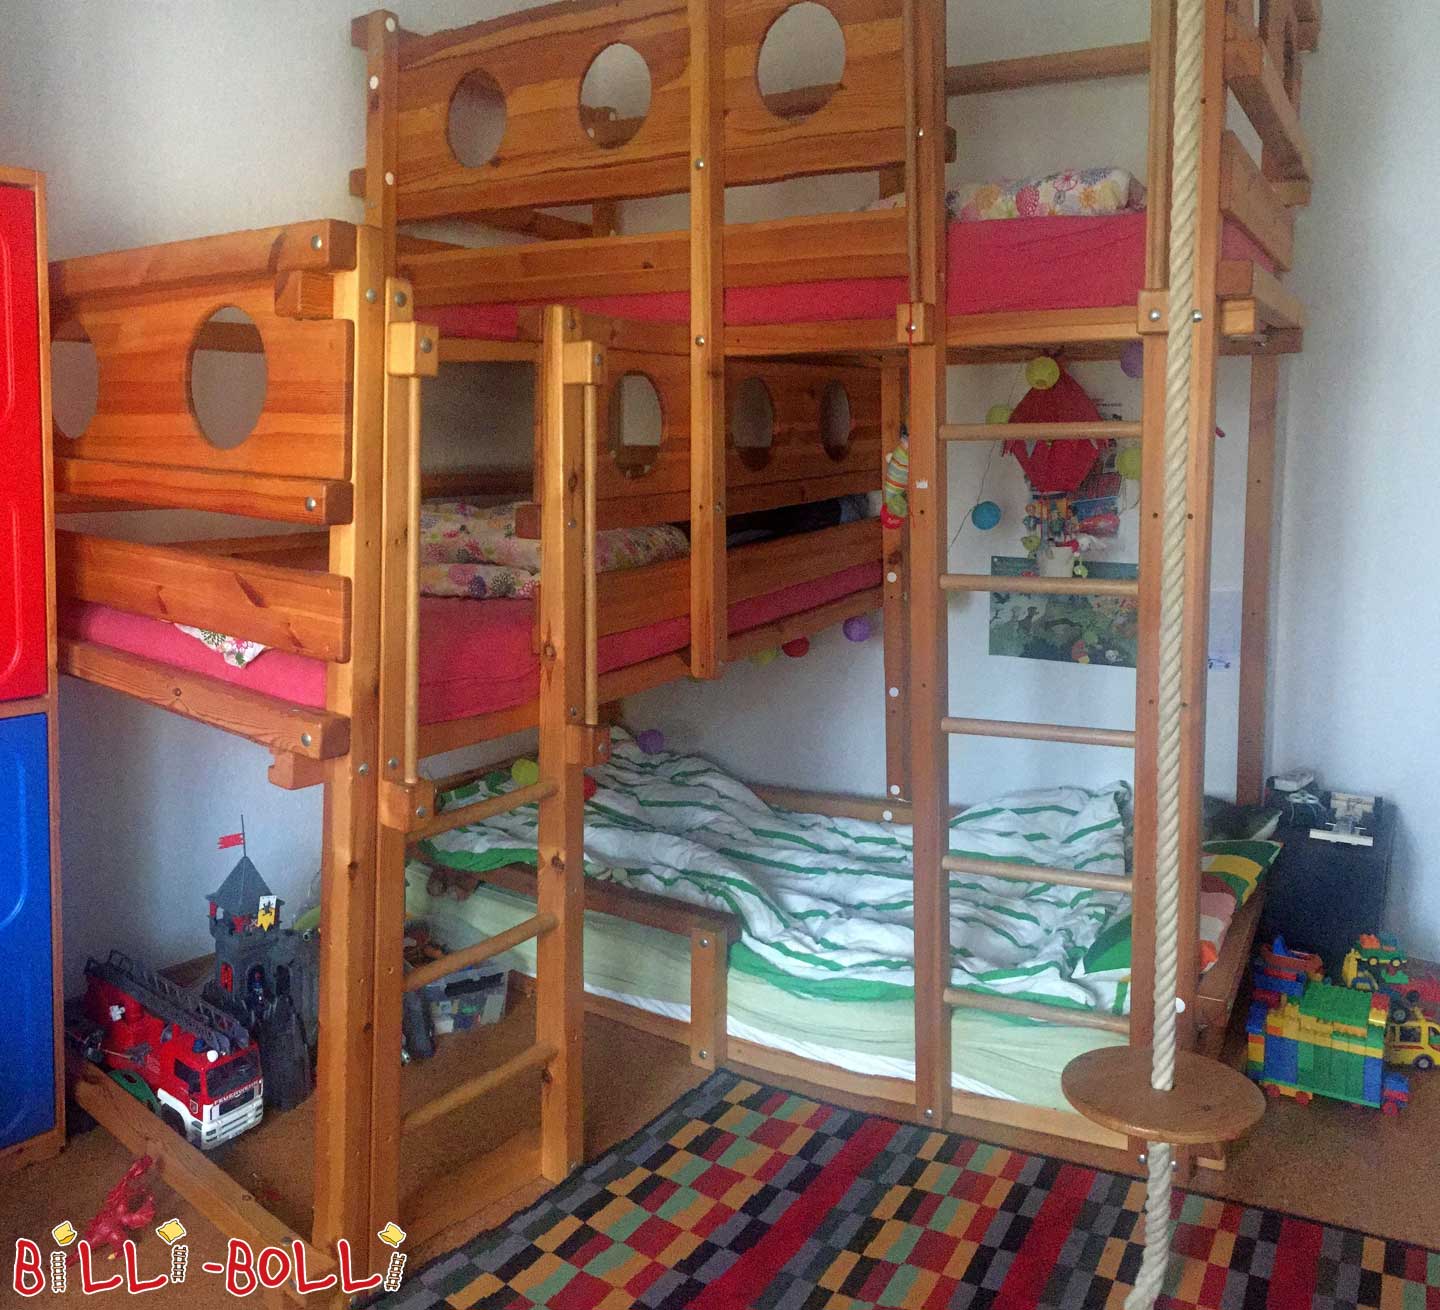 Her iki üst düzey yatak tipi 2A, 3. uyku seviyesi dahil (Kategori: Kullanılan çocuk mobilyaları)